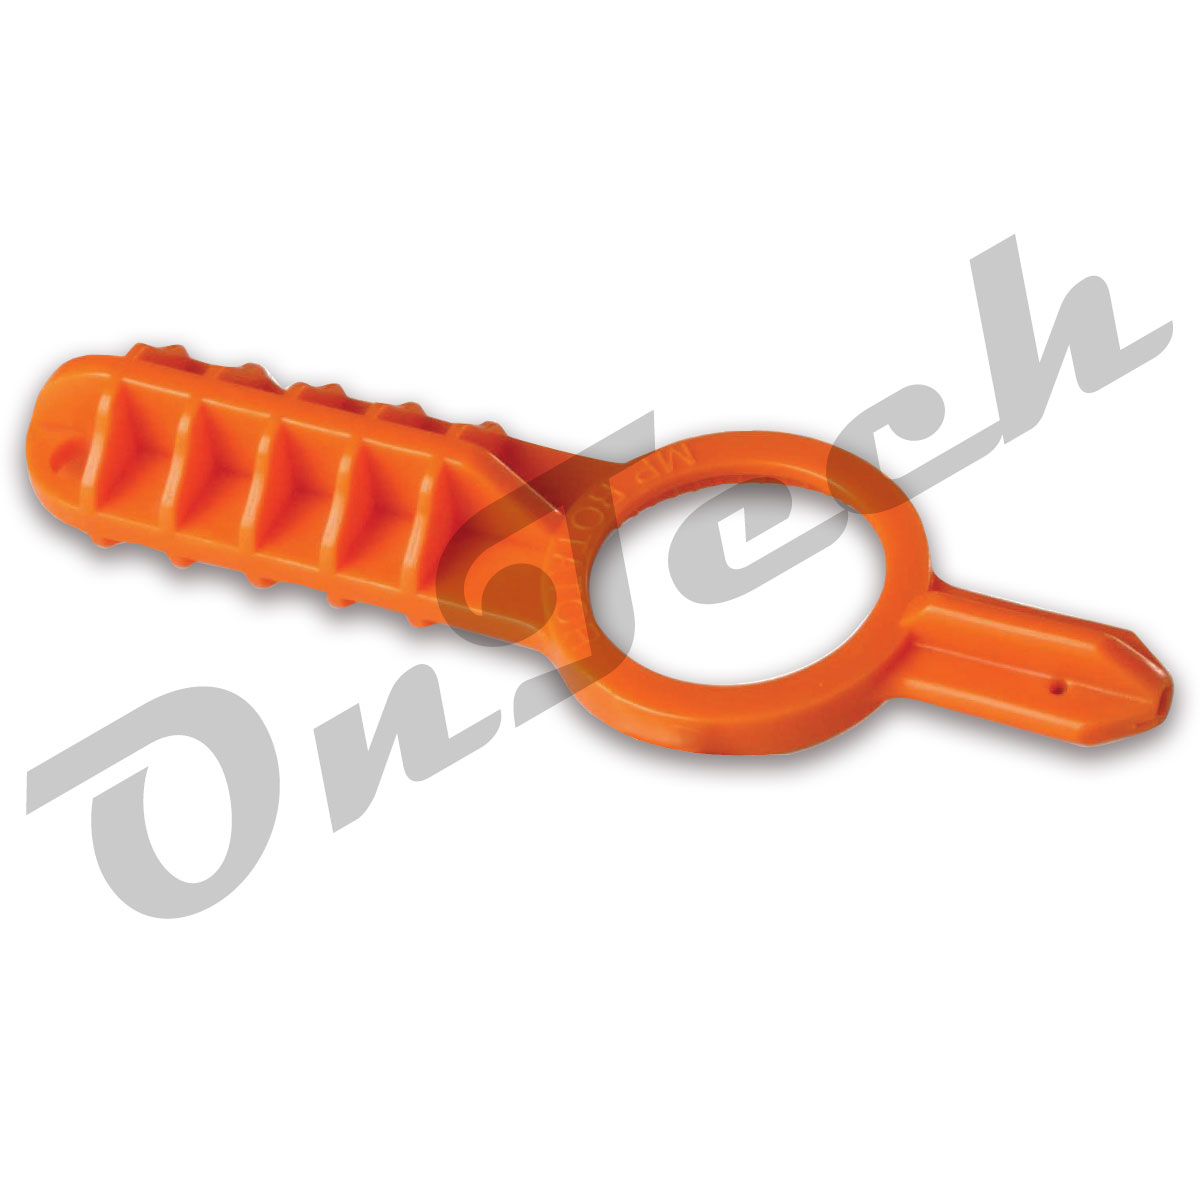 Einstellschlüssel für MP-Rotatoren - Modell: MPTool